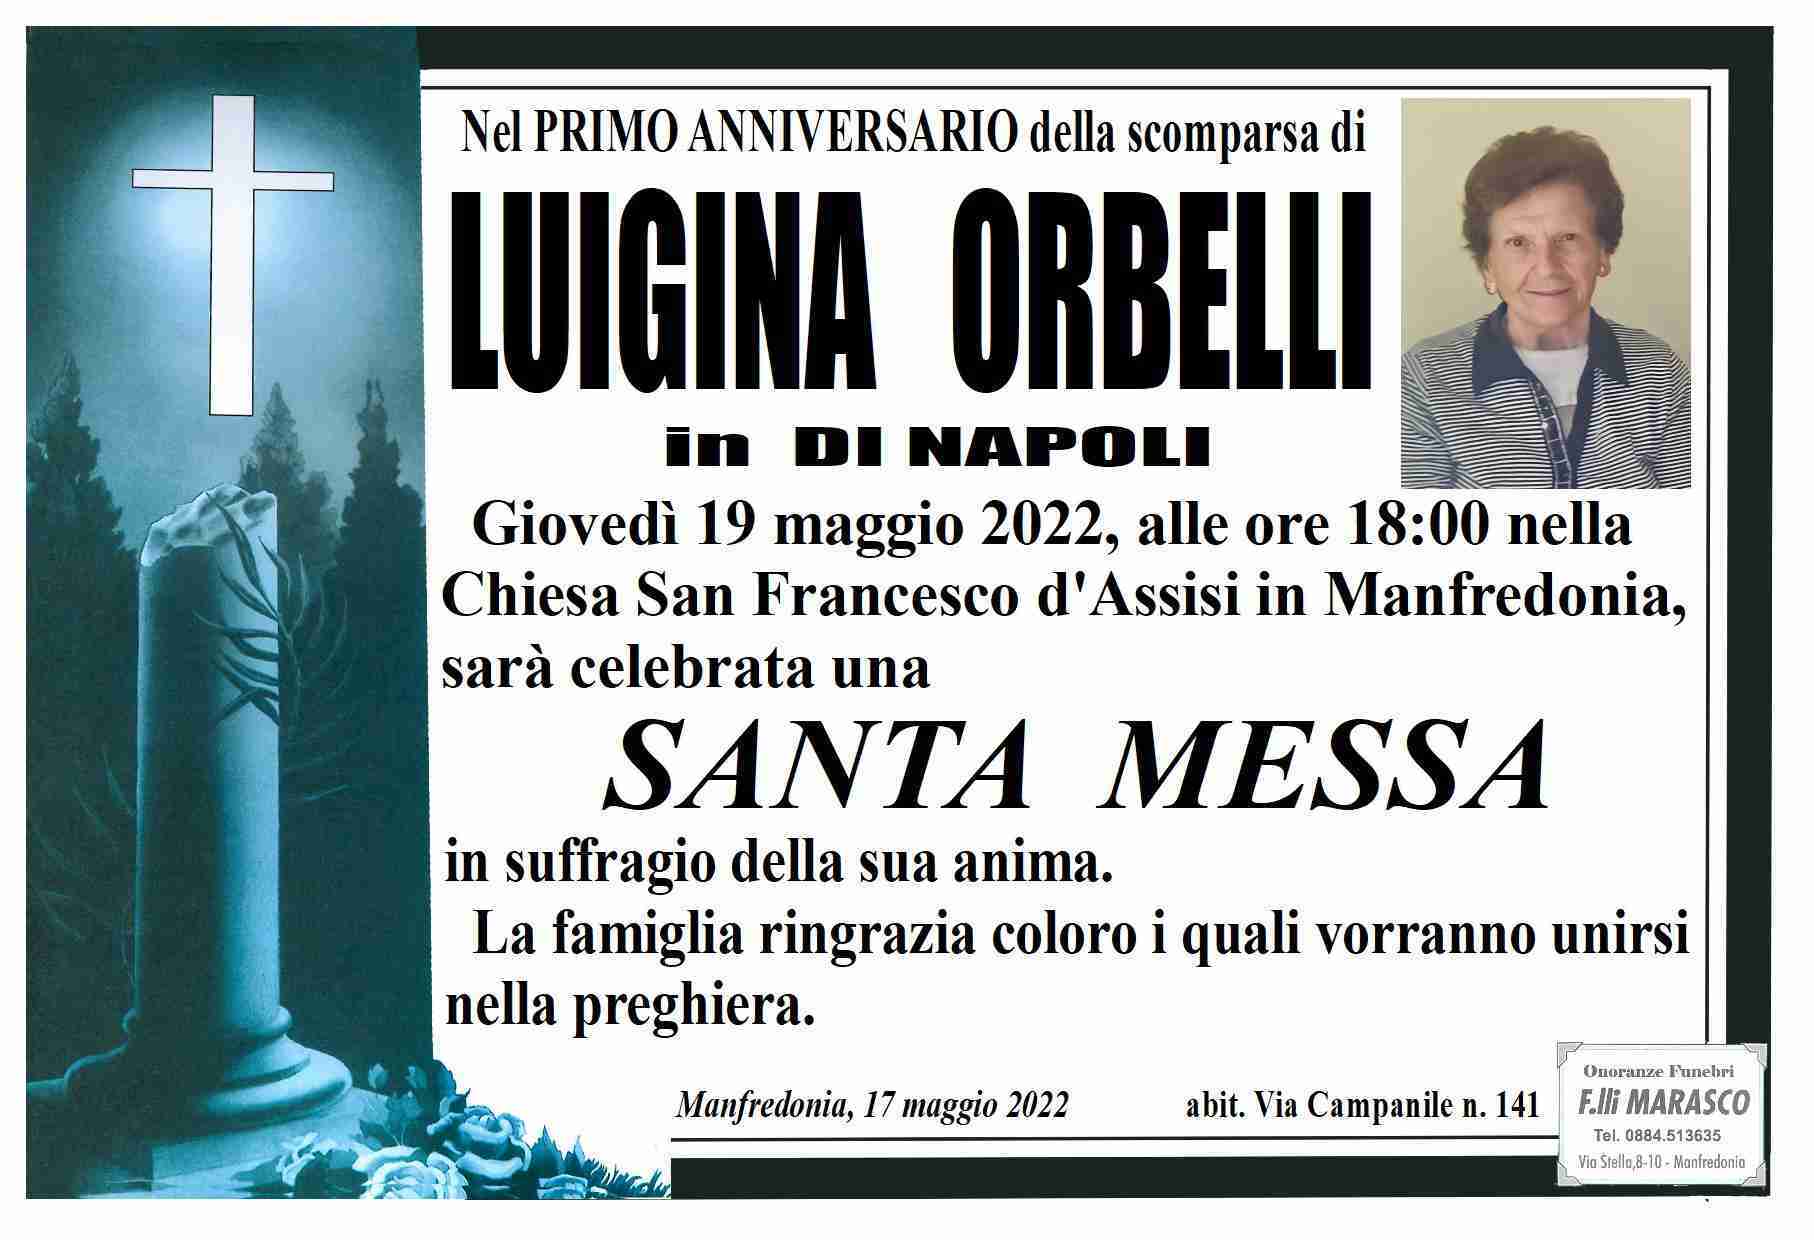 Luigina Orbelli